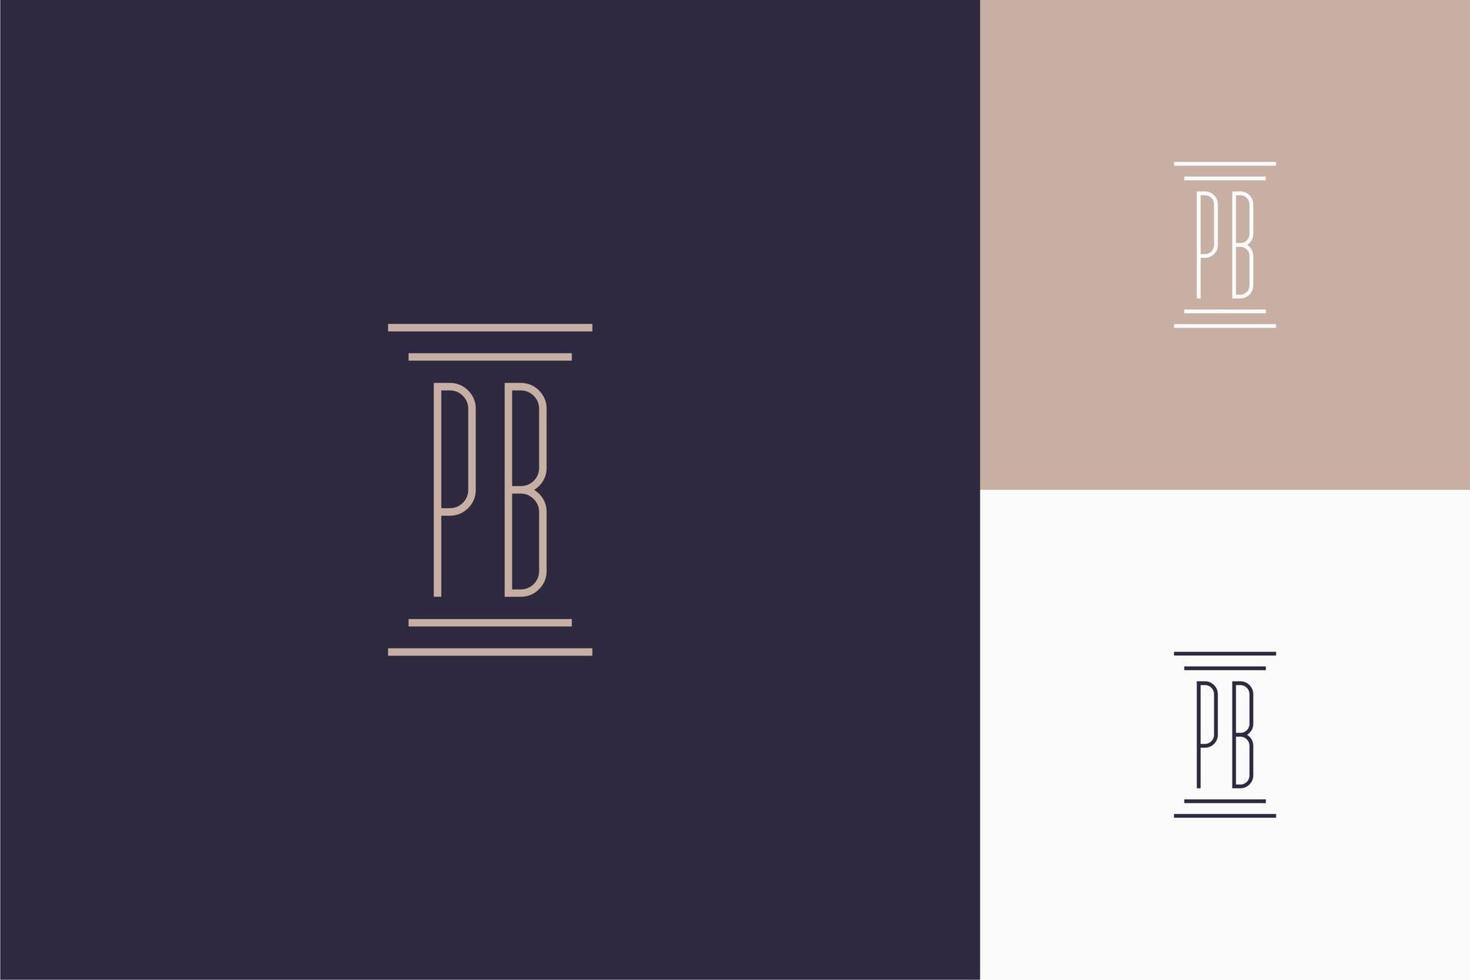 conception des initiales du monogramme pb pour le logo du cabinet d'avocats vecteur